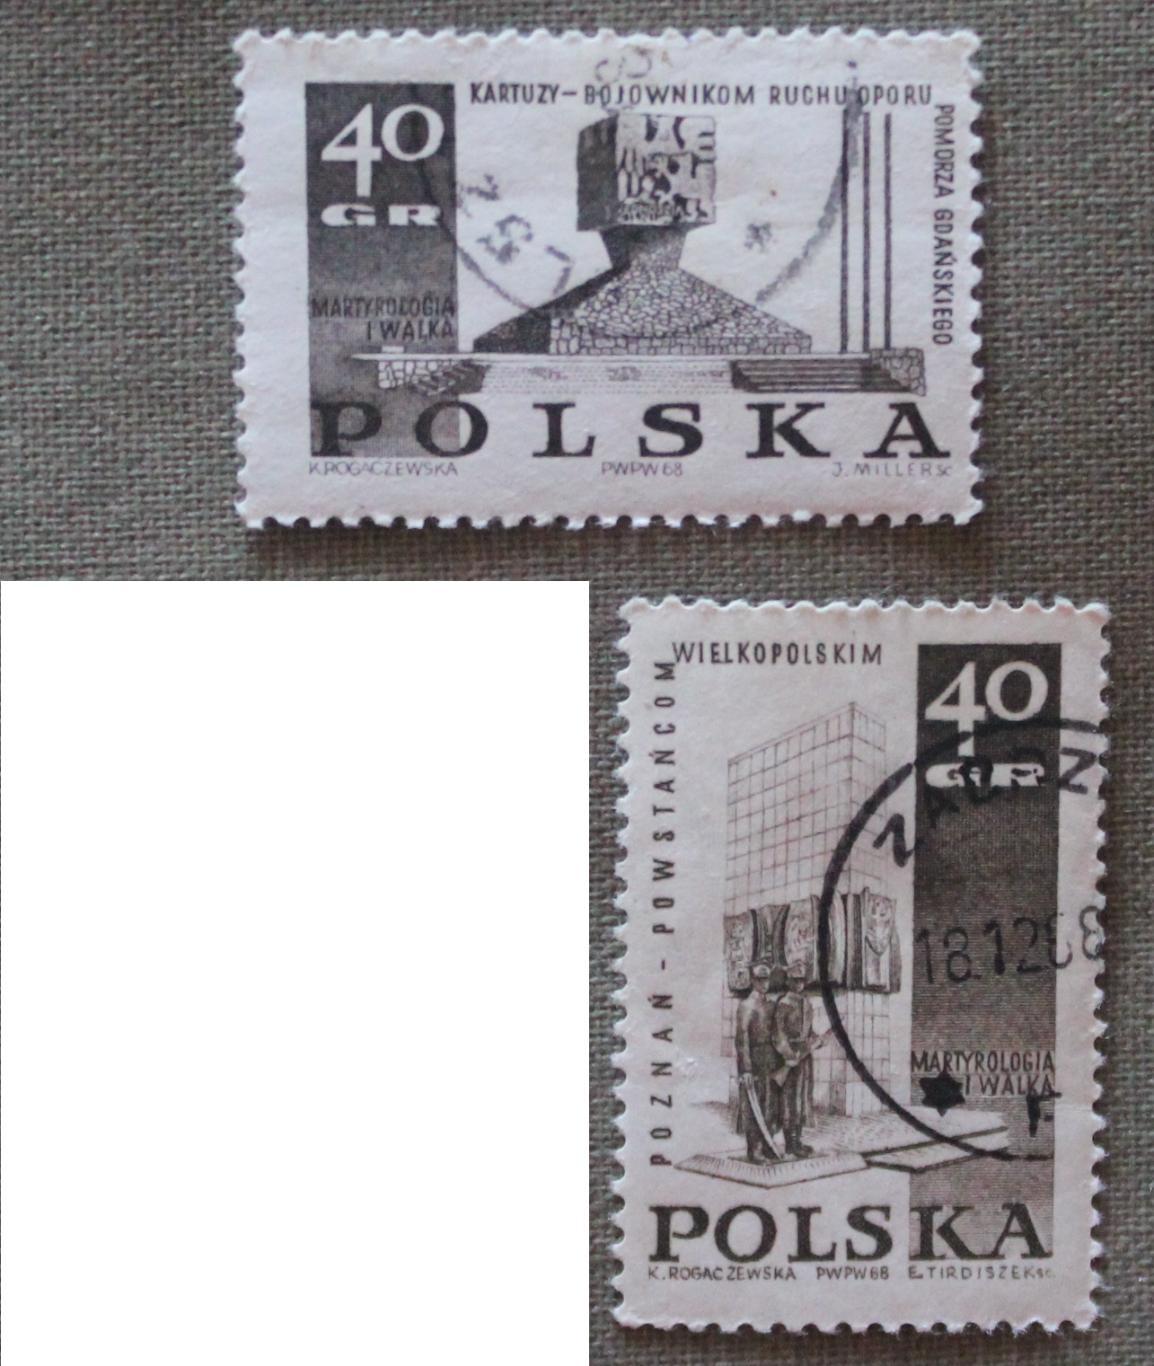 Две марки из набора Памятники Второй мировой войны. Почта Польши 1968